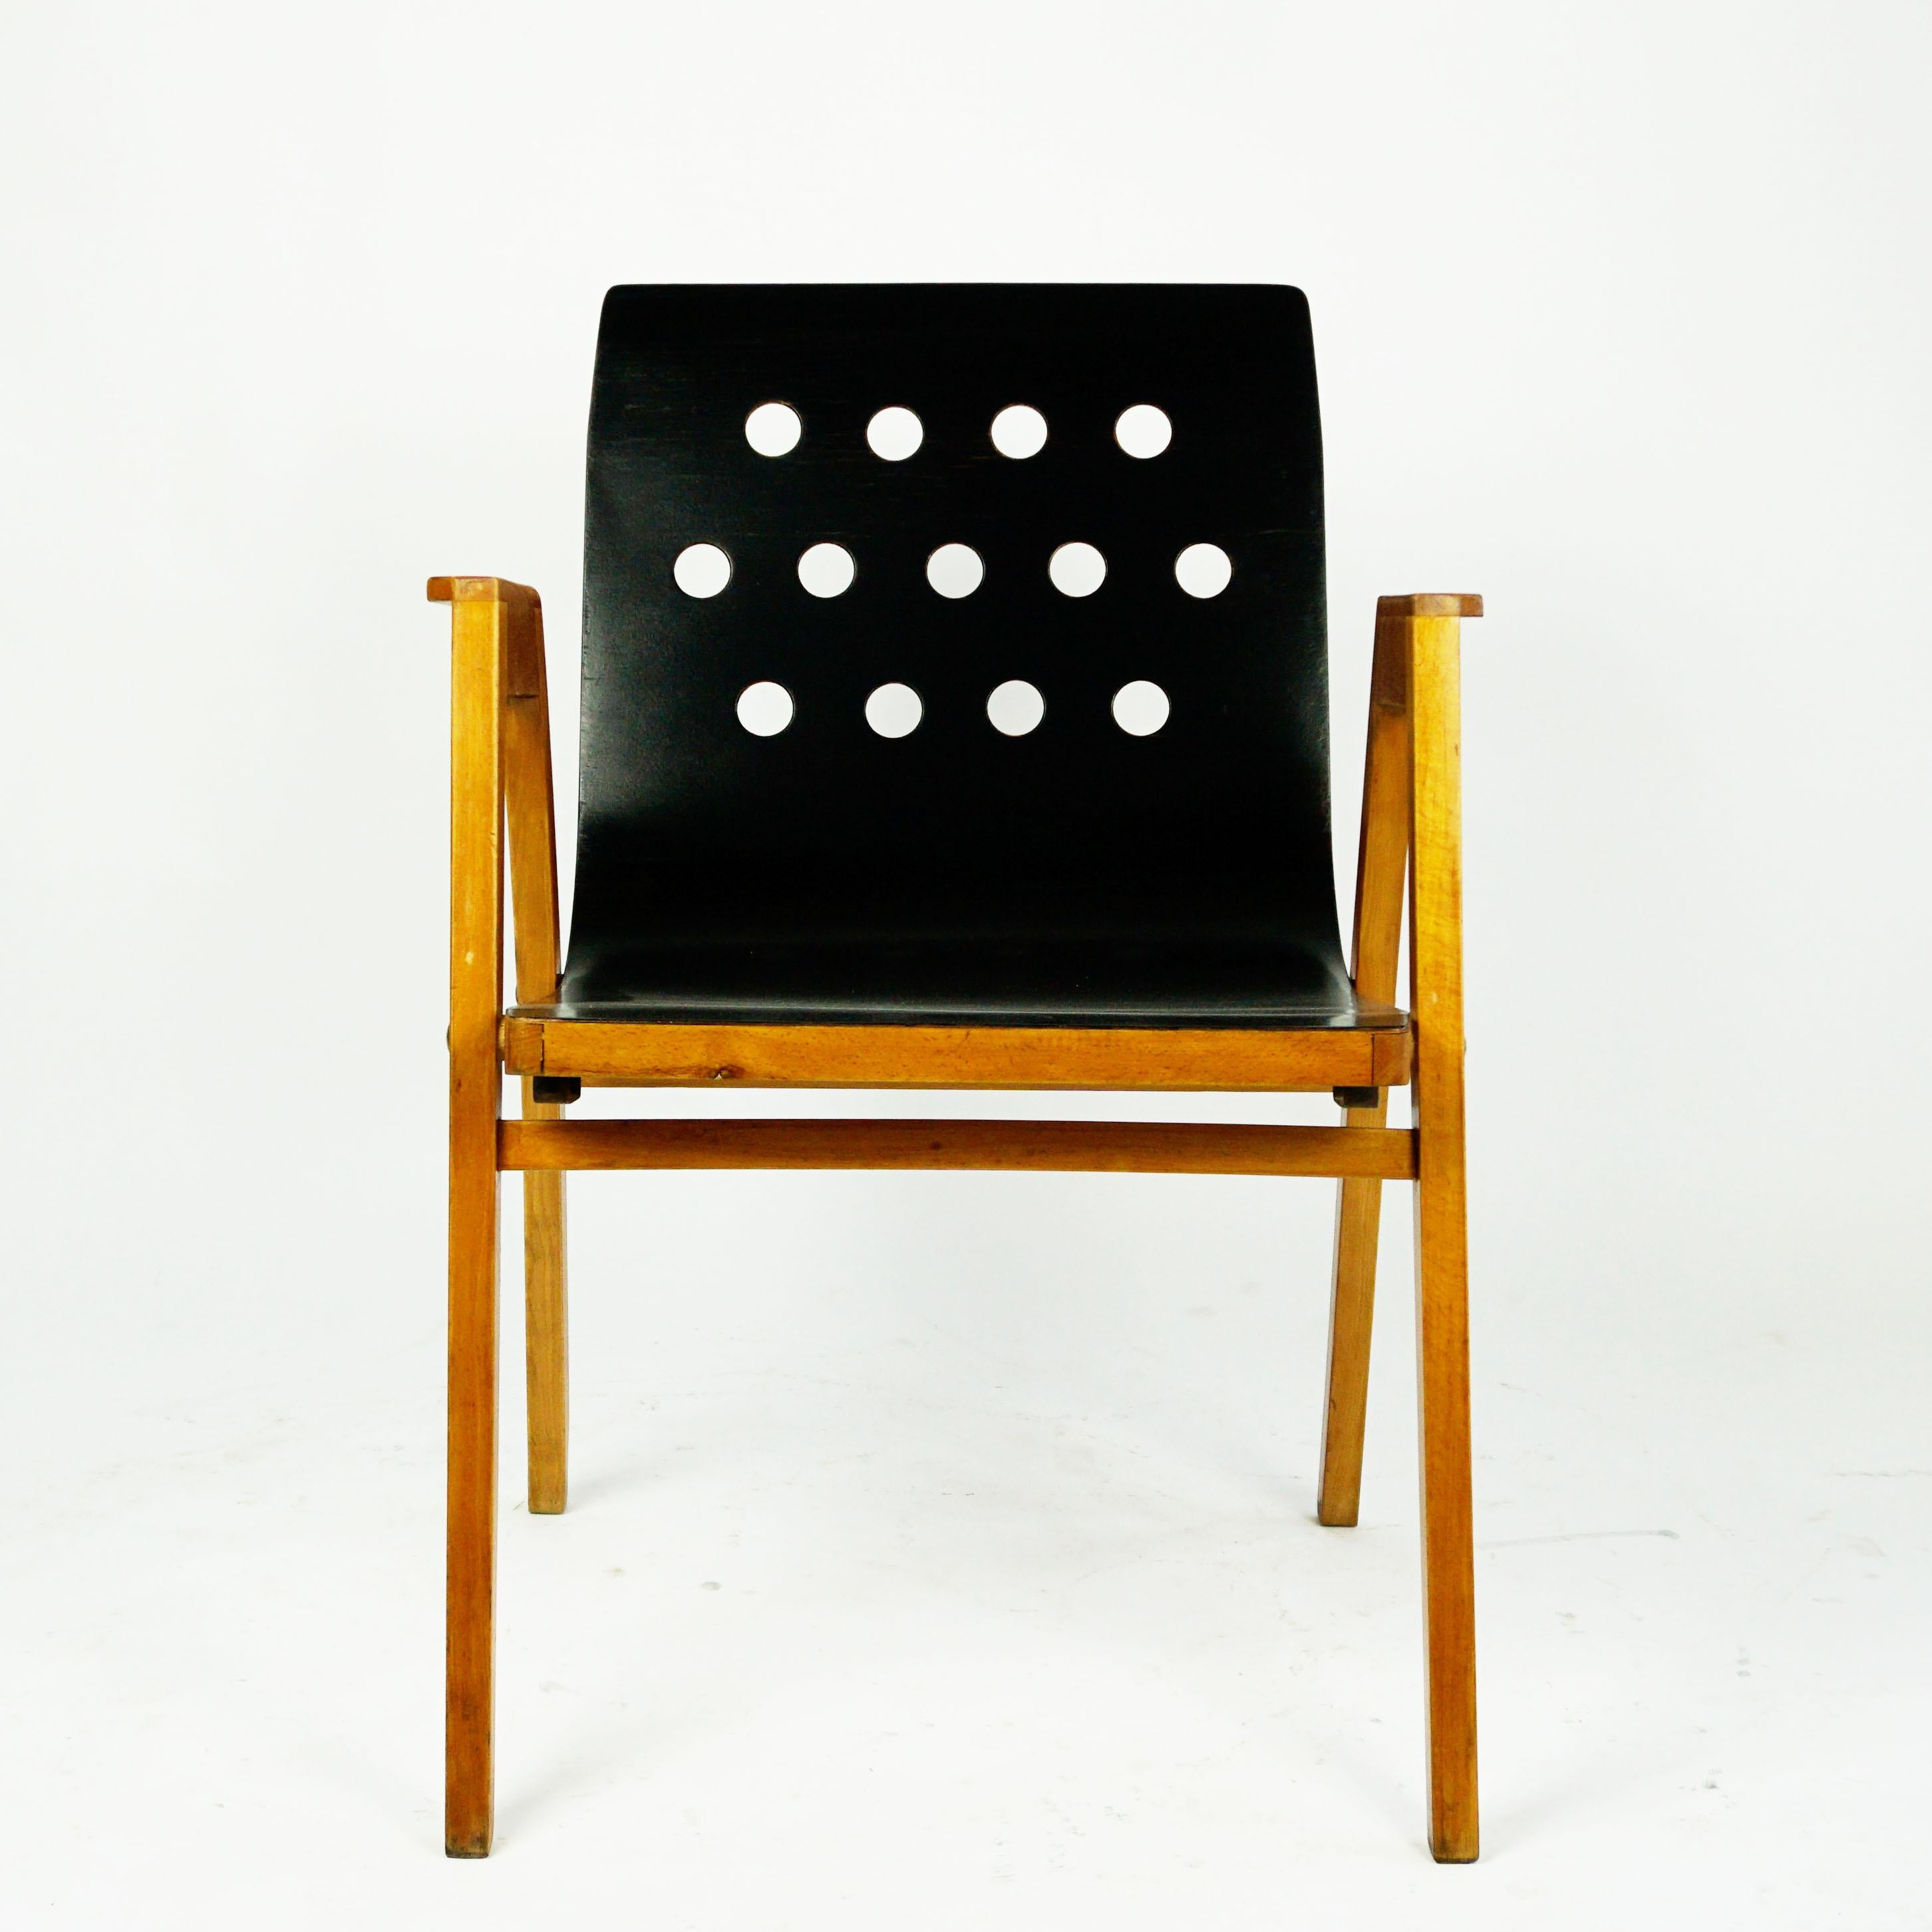 Österreichische Sessel aus Buchenholz aus der Mitte des Jahrhunderts in sehr gutem, leicht restauriertem und aufgearbeitetem Zustand. Die Sitze und perforierte Rückenlehnen sind aus gebogenem Sperrholz gefertigt.
Dieses ikonische Set wurde von